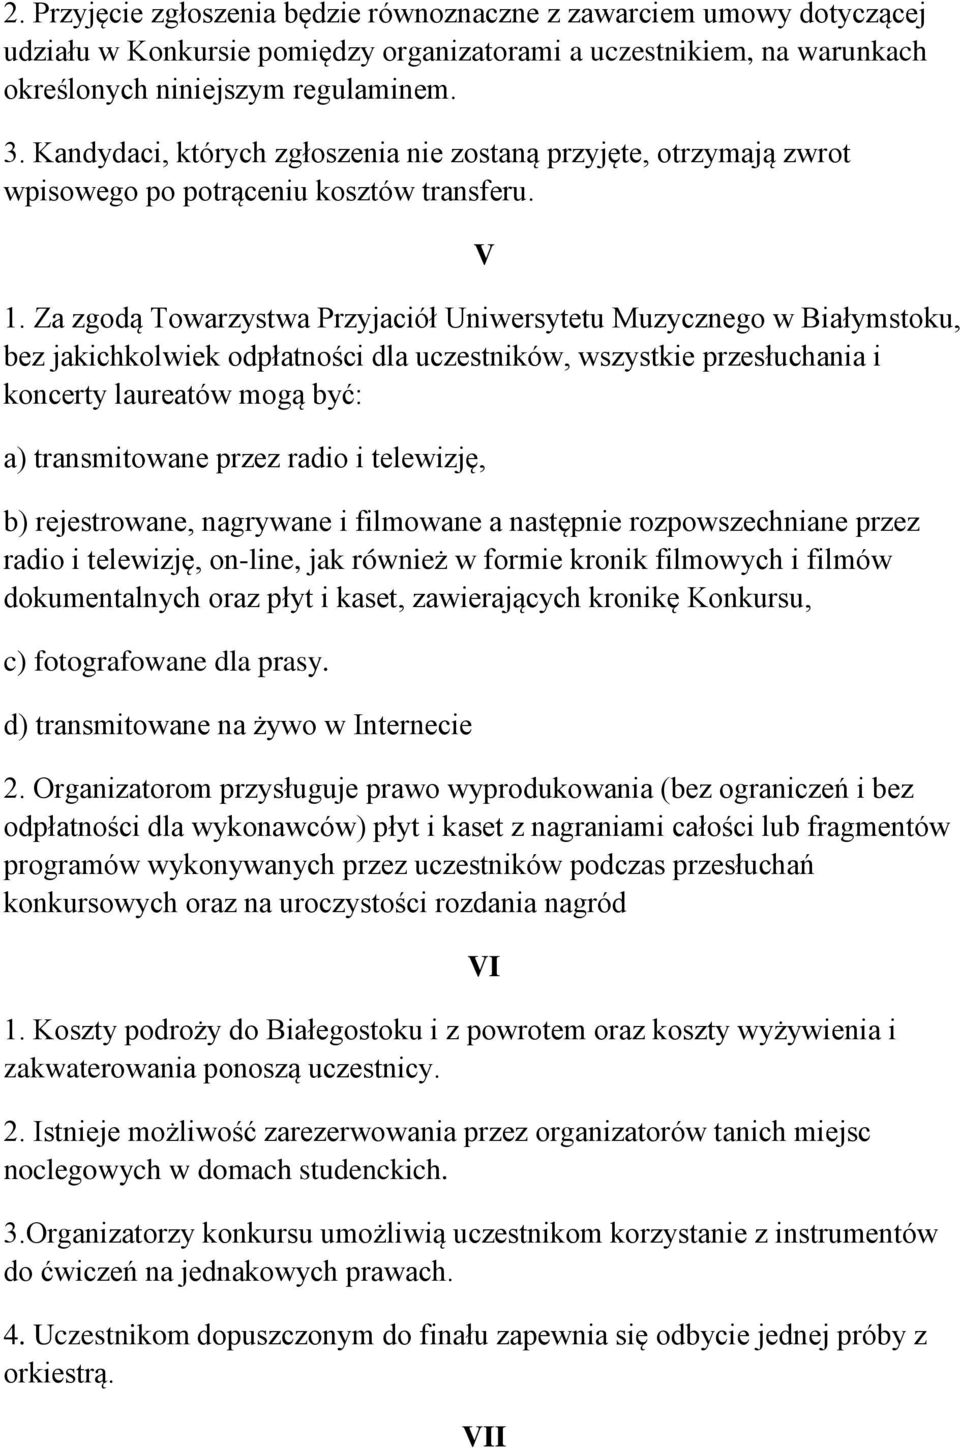 Za zgodą Towarzystwa Przyjaciół Uniwersytetu Muzycznego w Białymstoku, bez jakichkolwiek odpłatności dla uczestników, wszystkie przesłuchania i koncerty laureatów mogą być: a) transmitowane przez